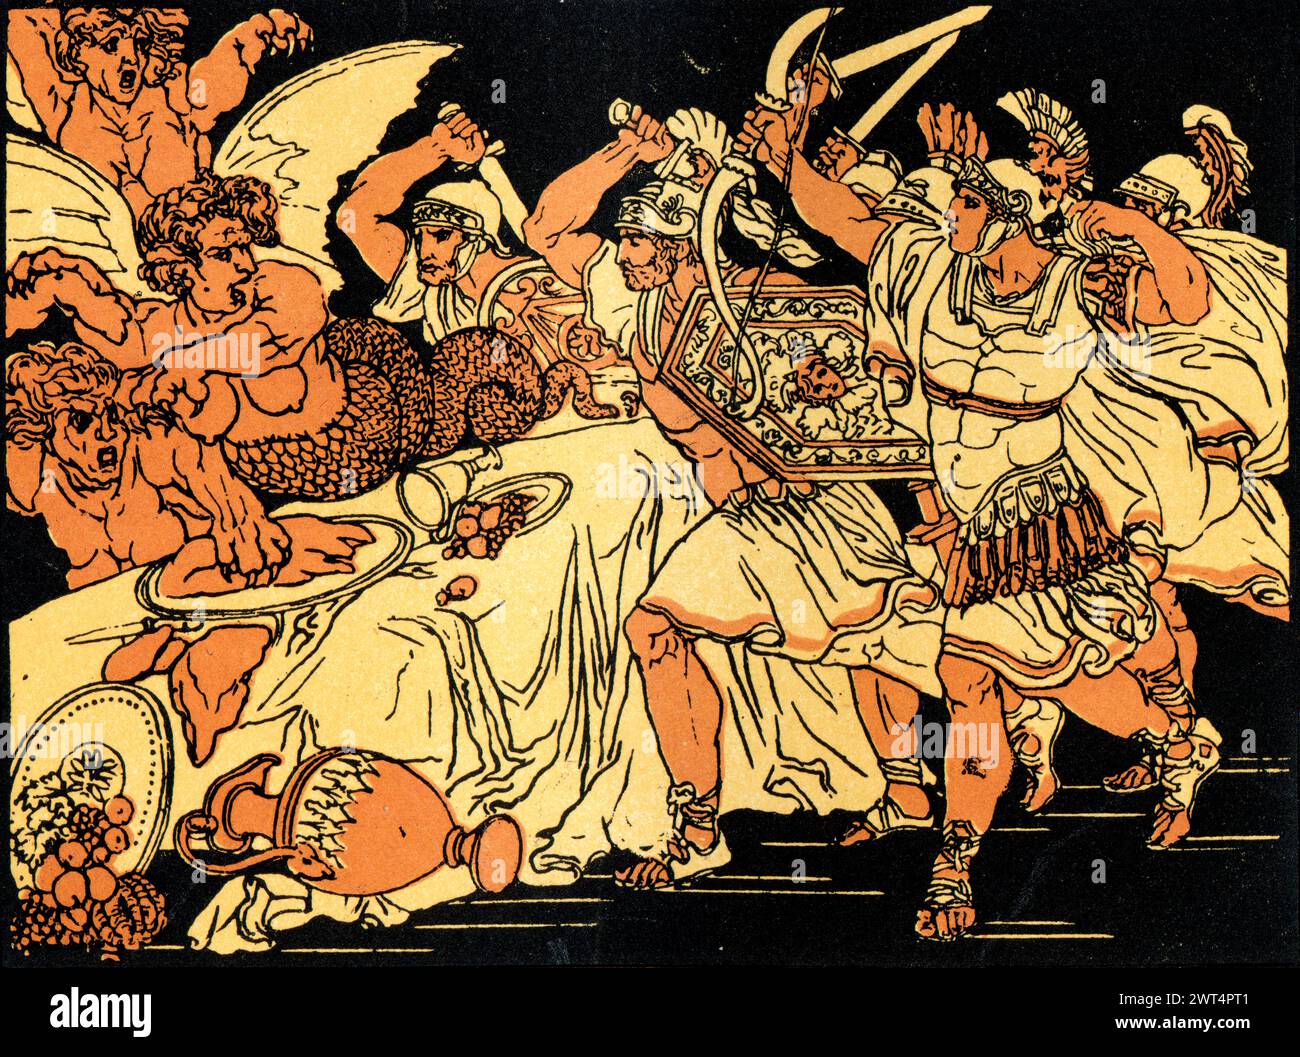 Illustrazione d'epoca mitologia romana, battaglia con le arpie, Eneide un poema epico latino che racconta la leggendaria storia di Enea, un troiano fuggito dalla fa Foto Stock